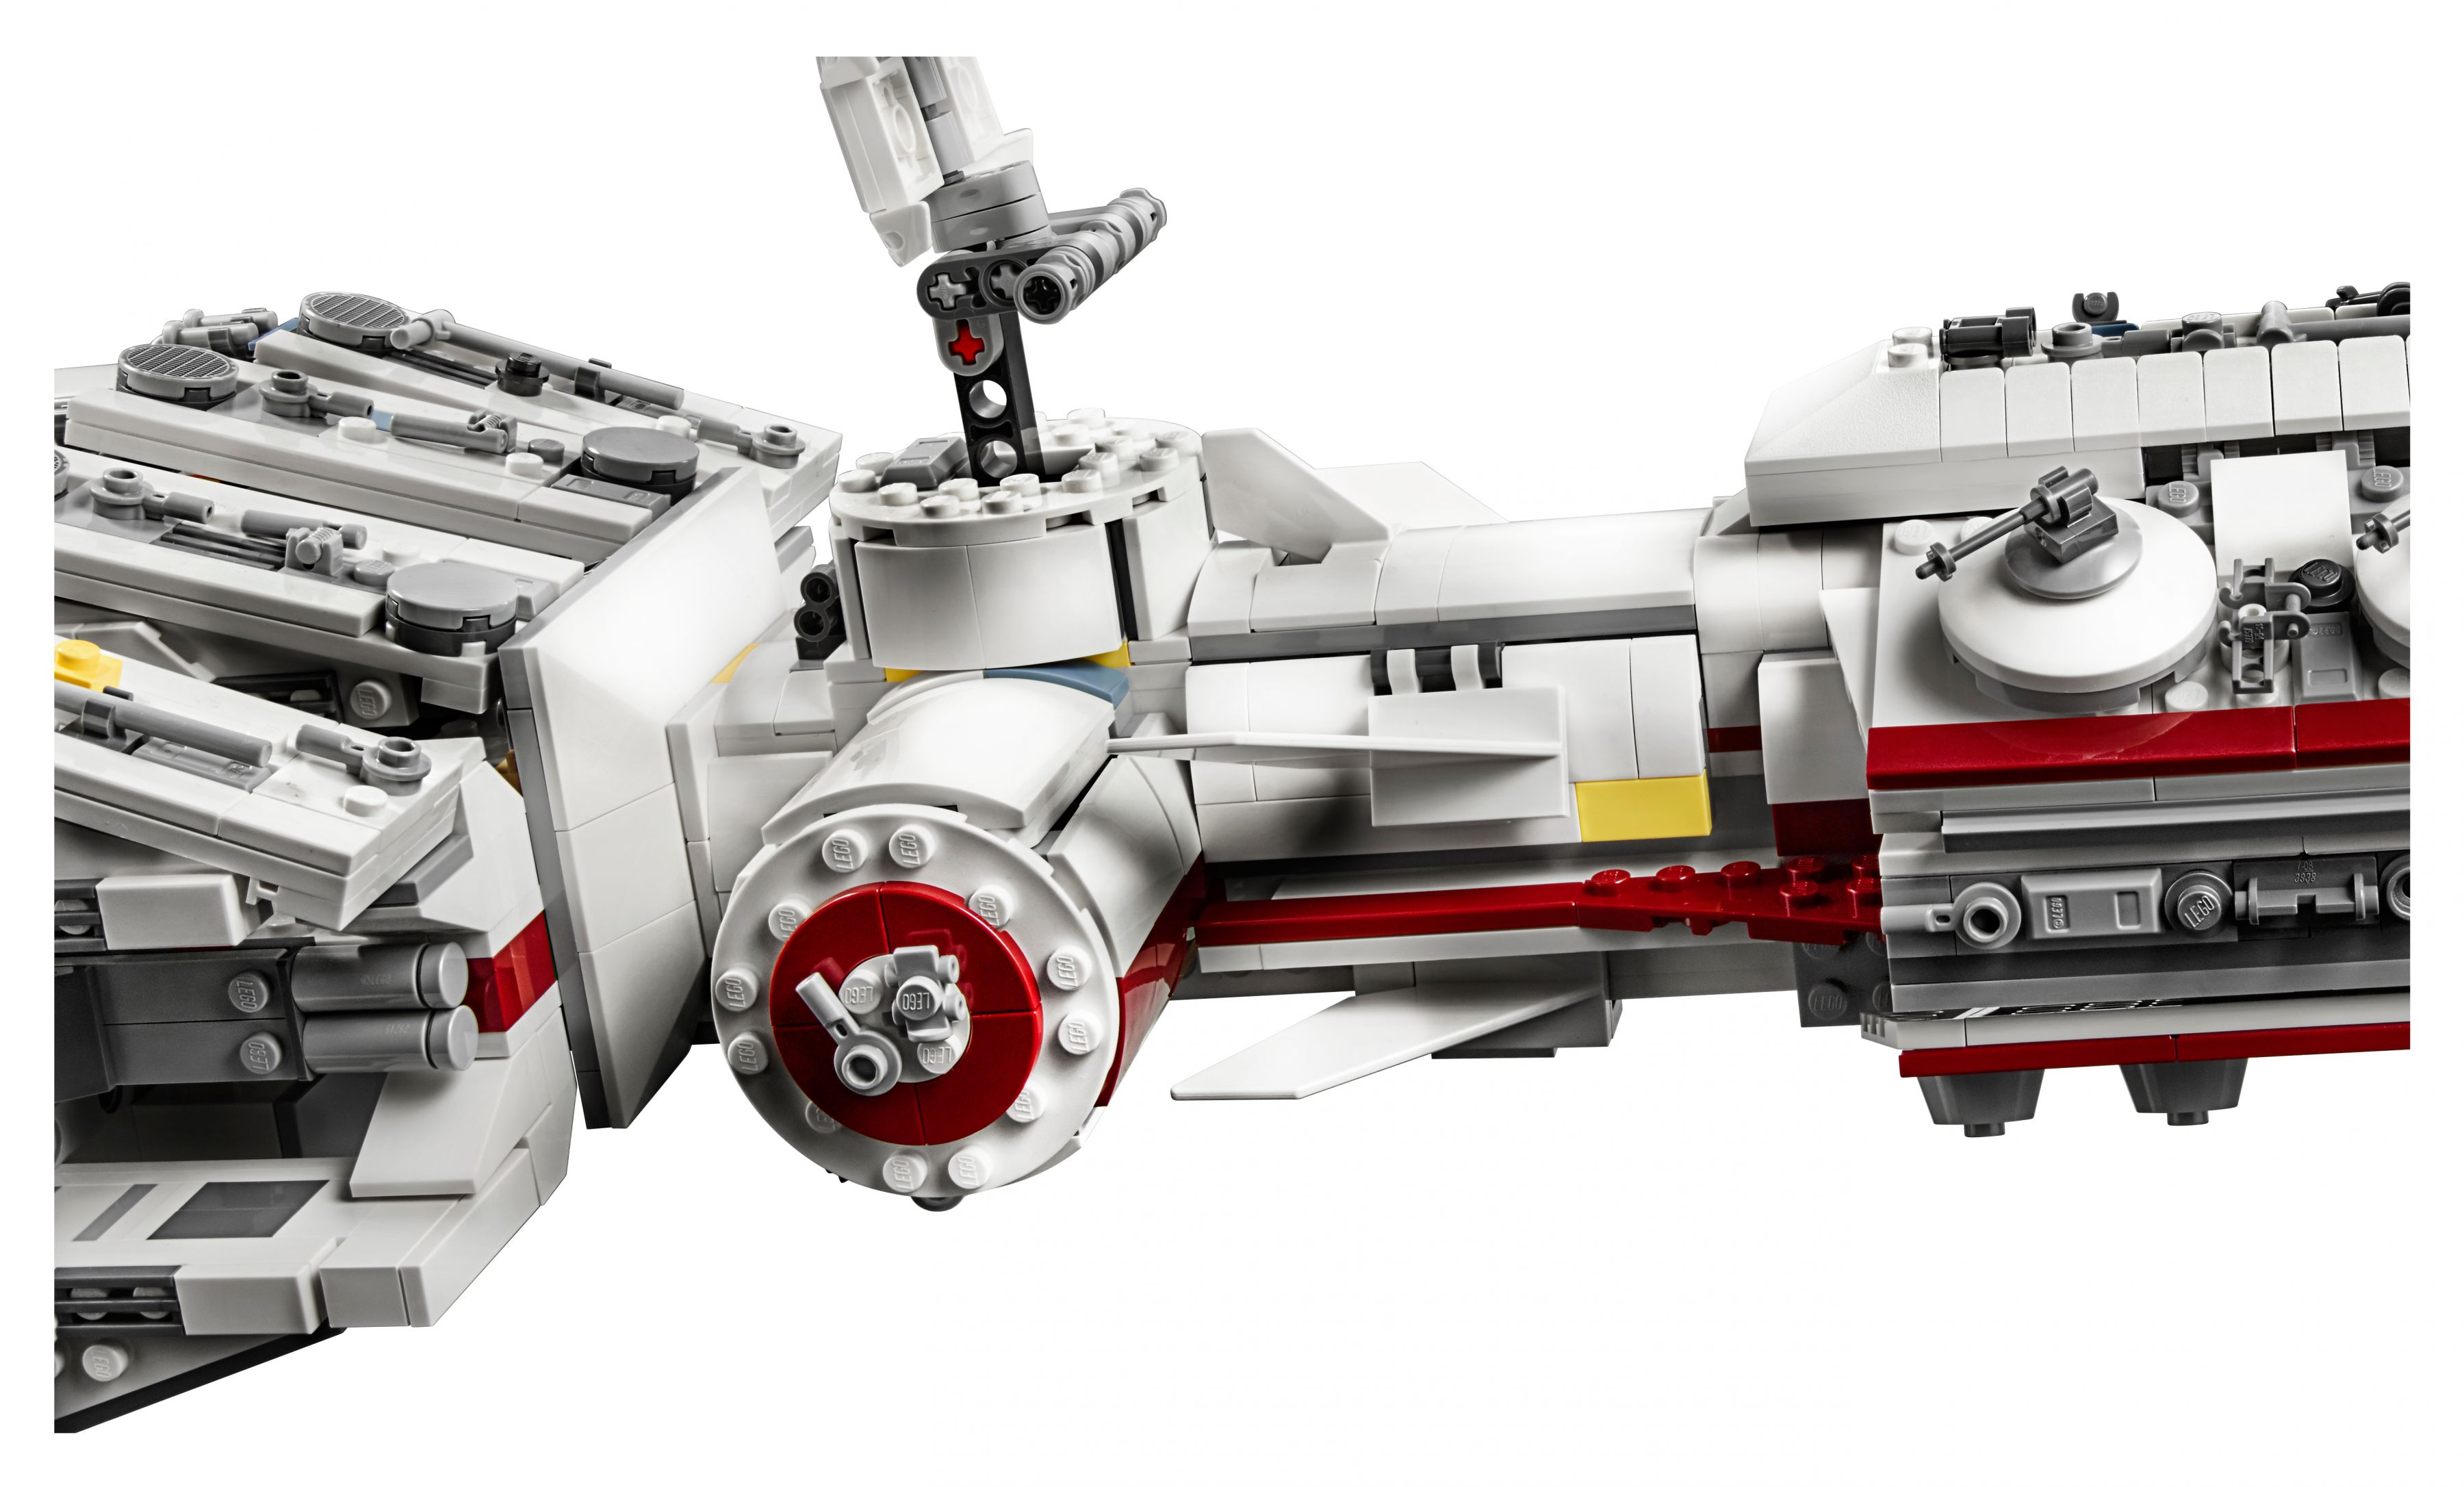 LEGO Star Wars 75244 Tantive IV LEGO_75244_alt11.jpg